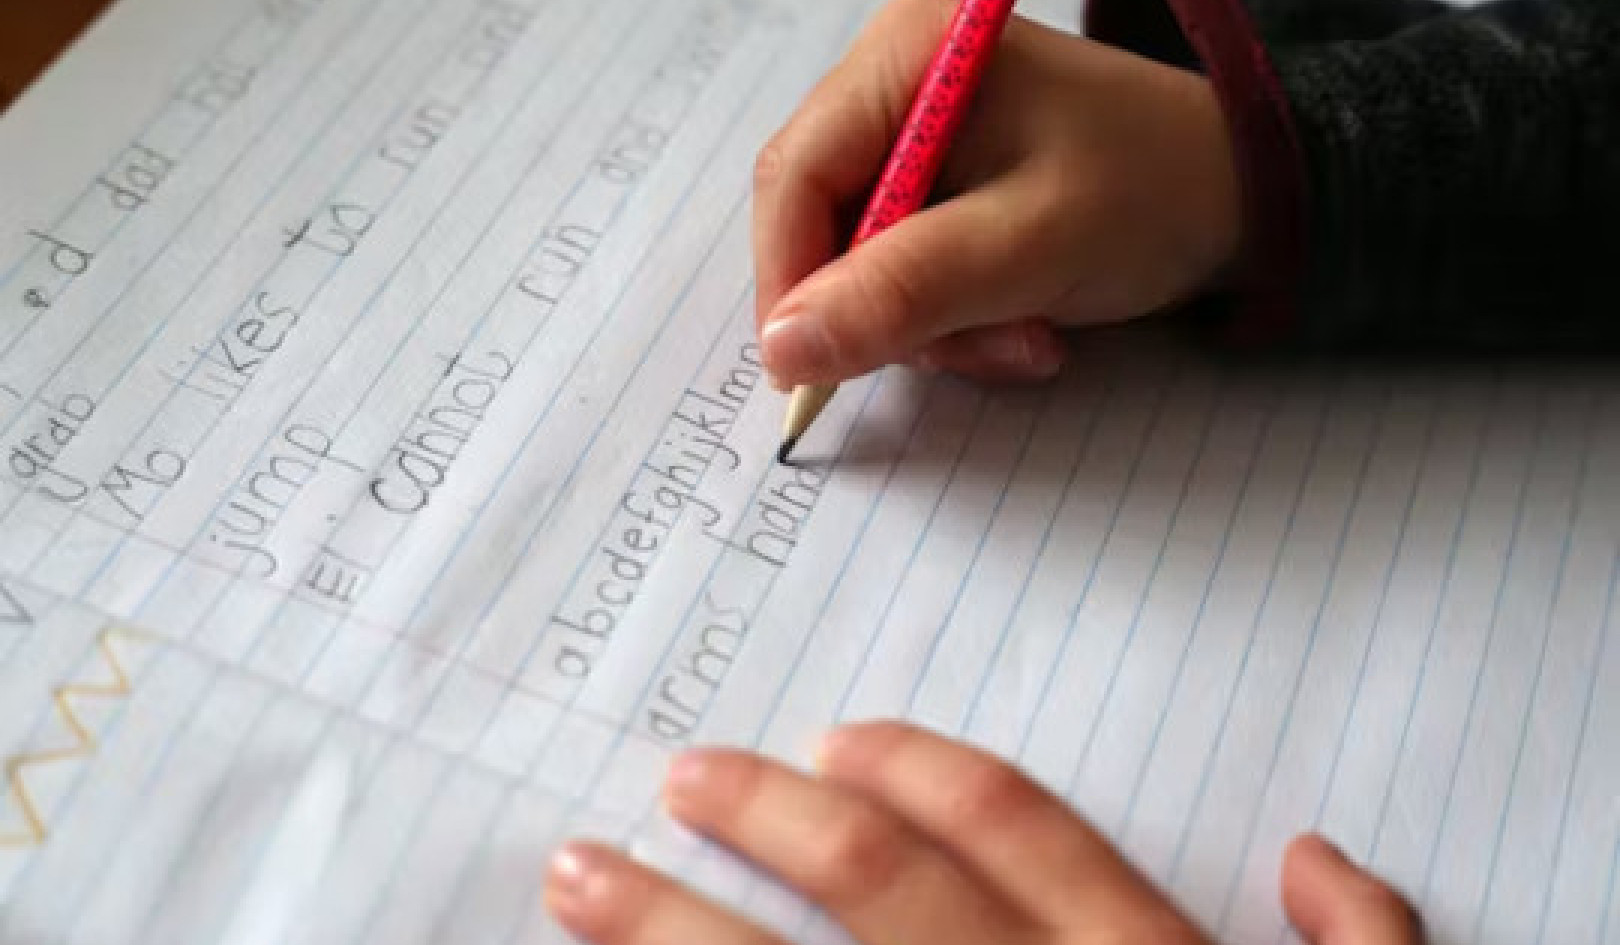 लिखावट का महत्व: 5 कारण बच्चों को अभी भी लिखावट सीखने की जरूरत है